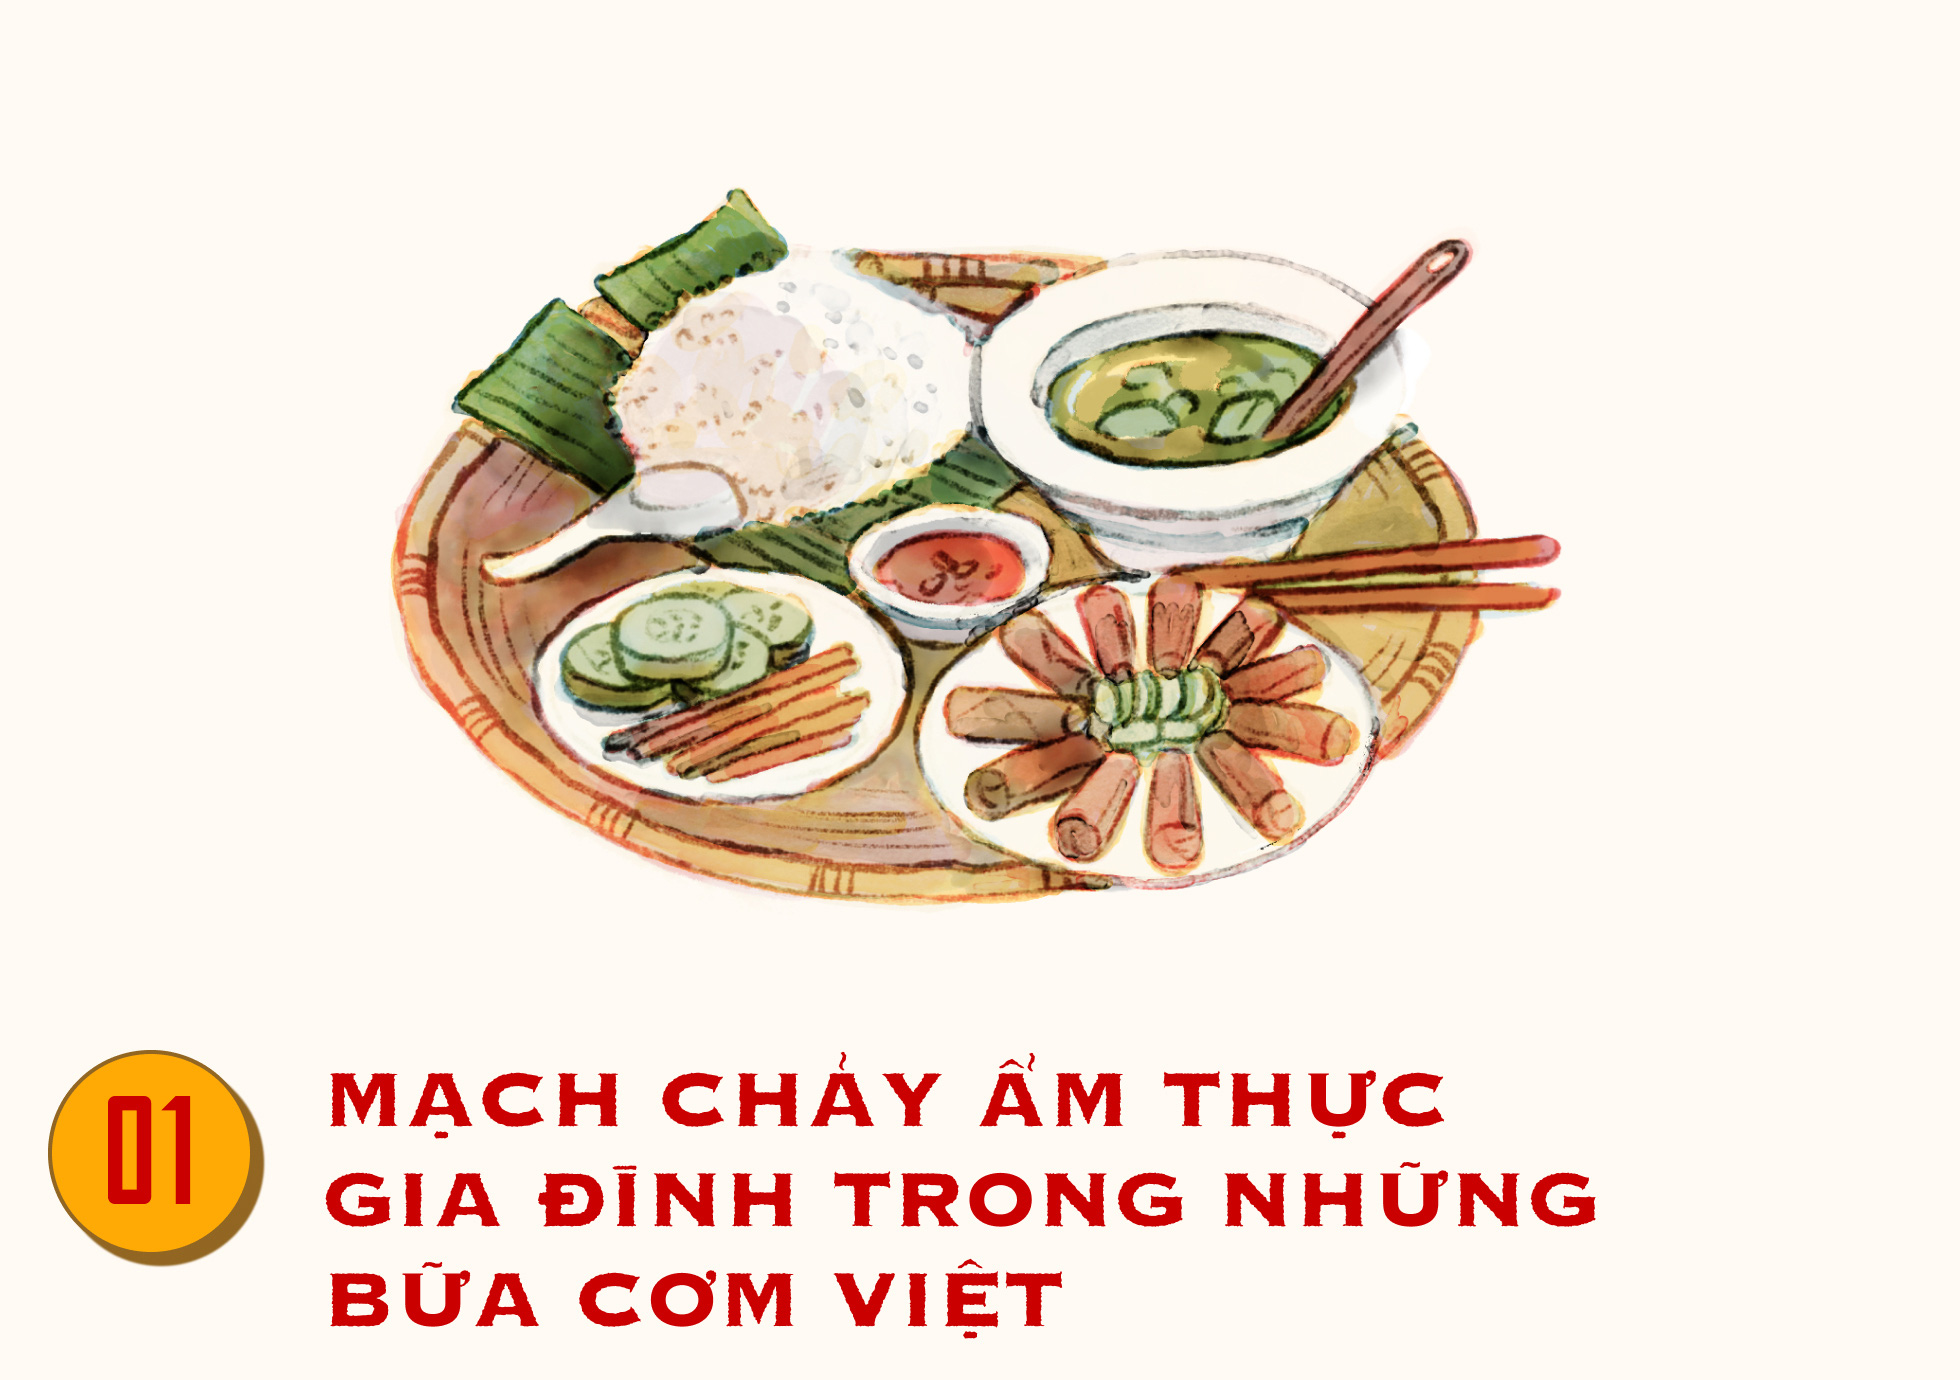 Bữa cơm Việt truyền thống luôn là một phần không thể thiếu của con người Việt. Video này sẽ khiến bạn tìm hiểu thêm về những món ăn truyền thống của Việt Nam và cách chế biến chúng. Bạn sẽ được khám phá những cách chế biến đặc trưng của từng địa phương ở Việt Nam. Hãy cùng đón xem video này để có những trải nghiệm ẩm thực đặc sắc.